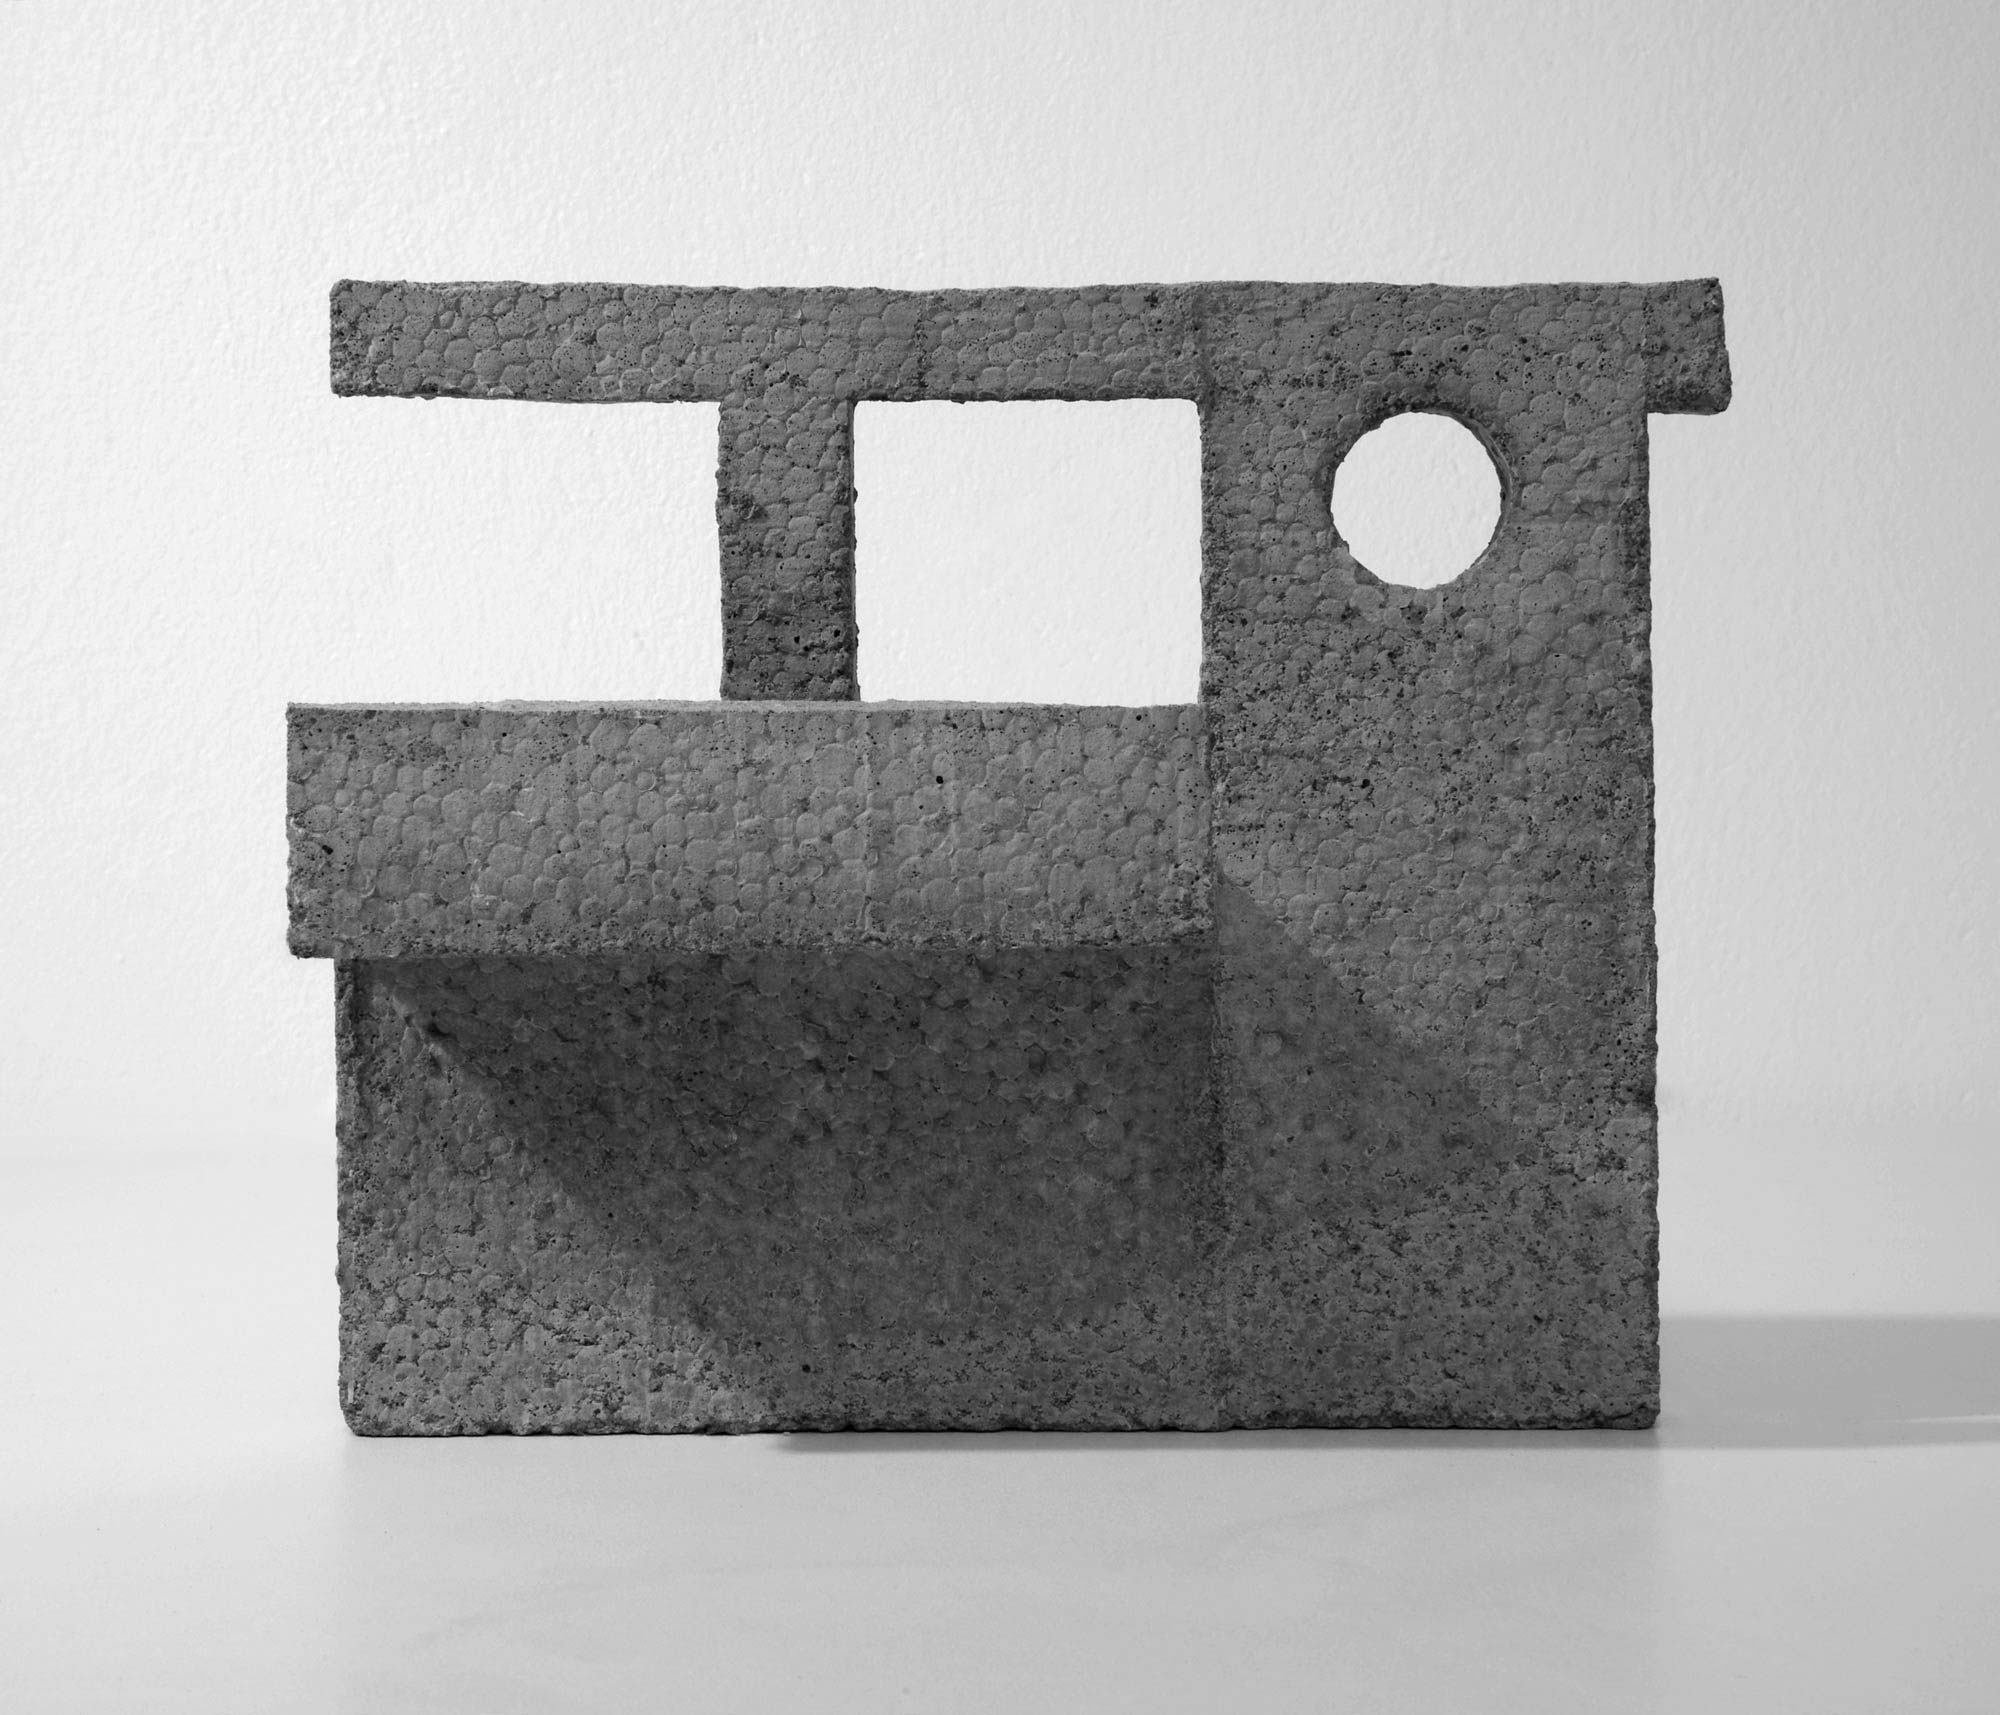 mattia listowski art design objet décoration sculpture béton moulage micro architecture maquette passage 4 édition limitée numérotée signée paris bruxelles 2020